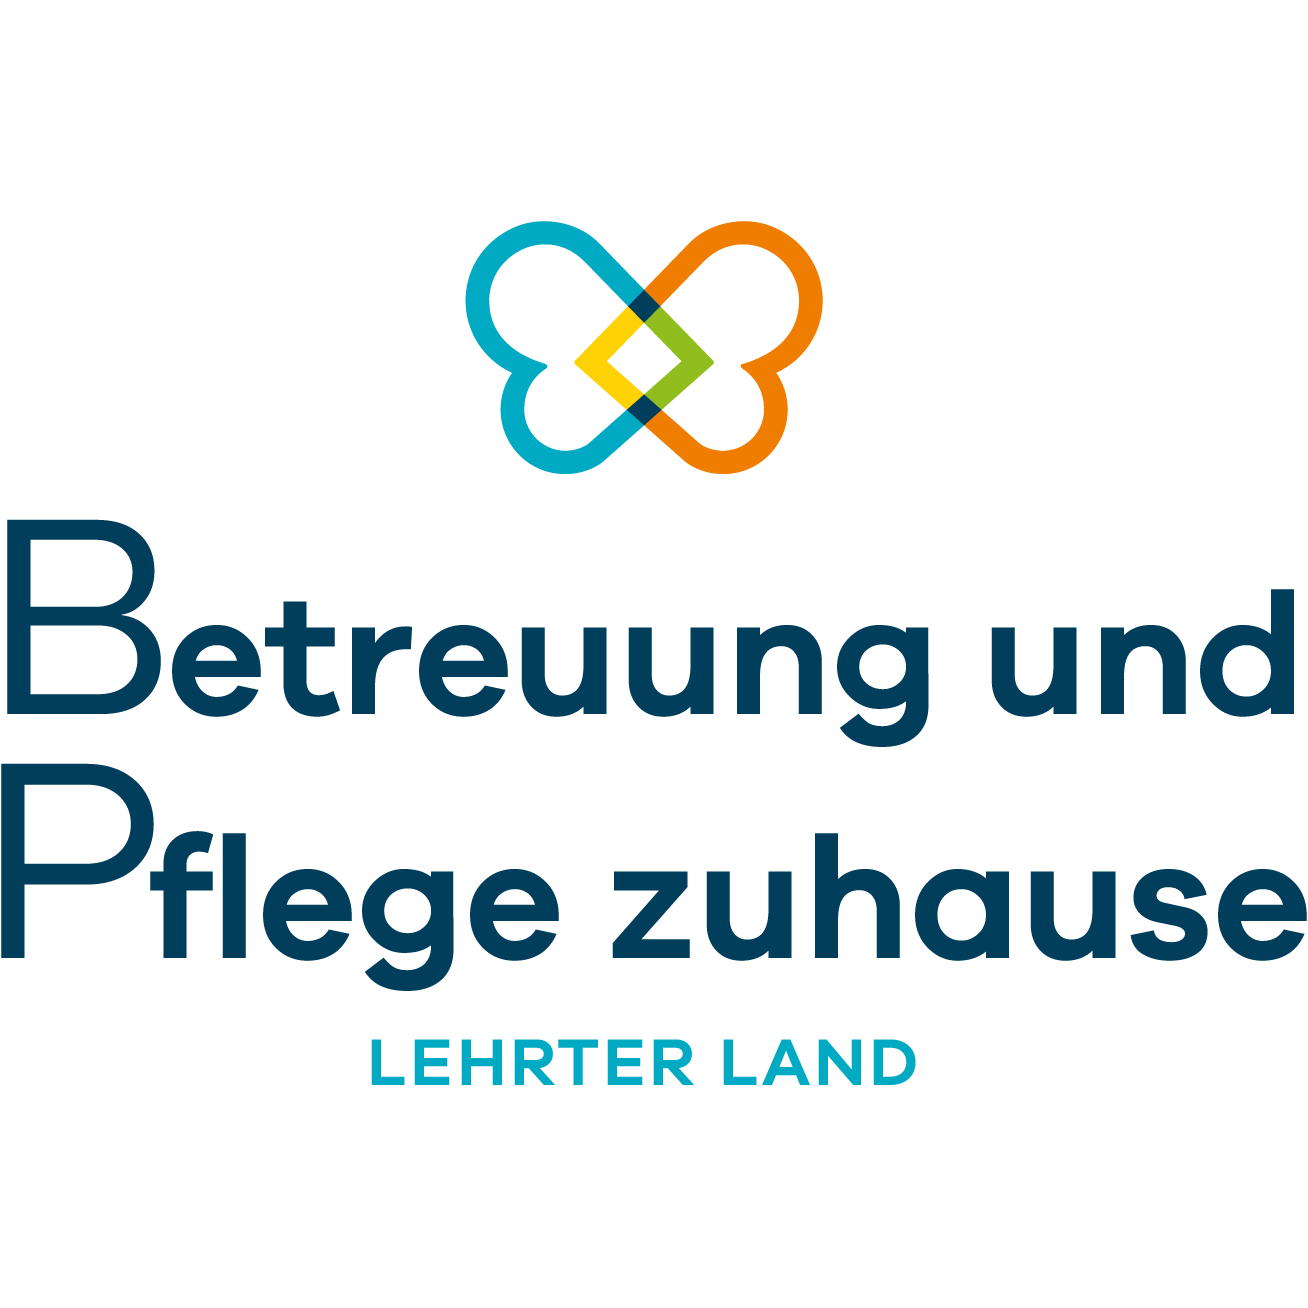 Betreuung und Pflege zuhause Lehrter Land Logo